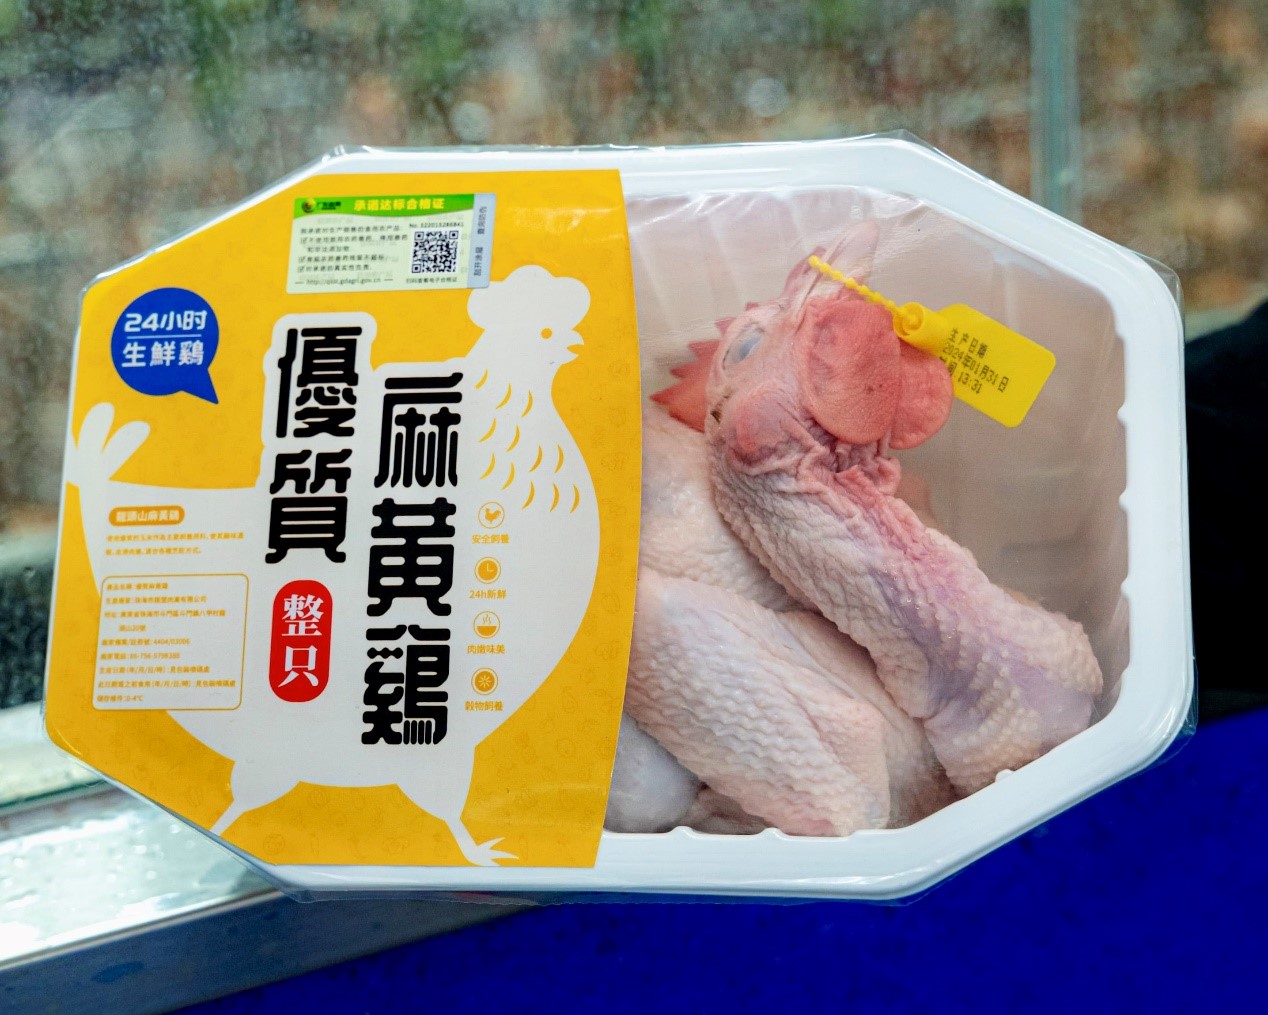 图为供澳“生鲜鸡”，佩有标示屠宰日期的鼻环，外包装上印有产品资讯、屠宰日期及时间等。